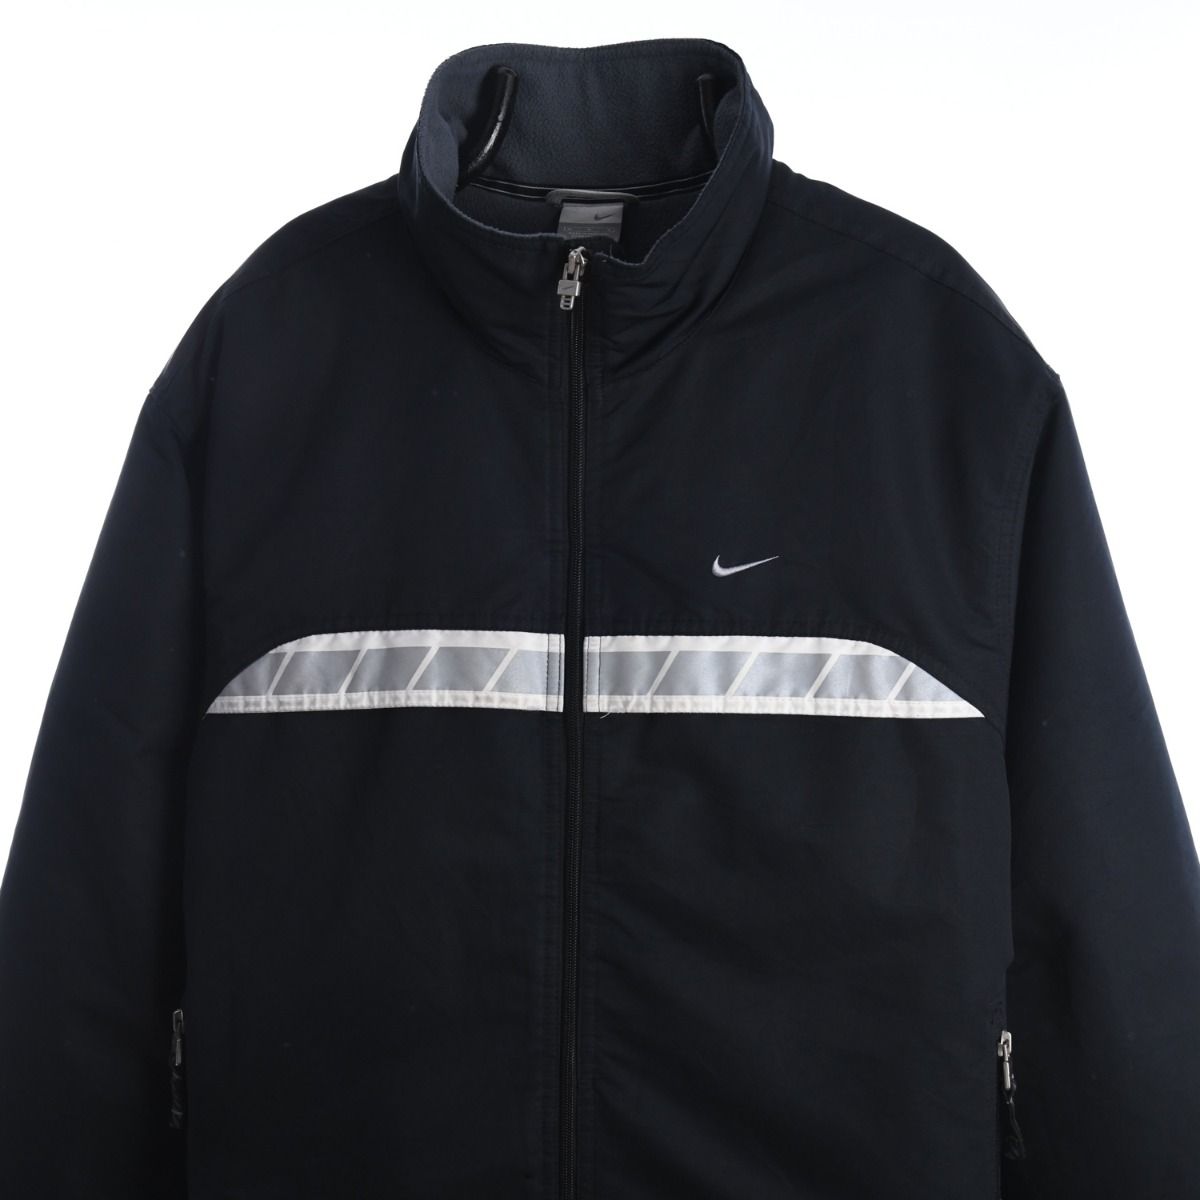 Nike Early 2000s Fleece Lined Jacket